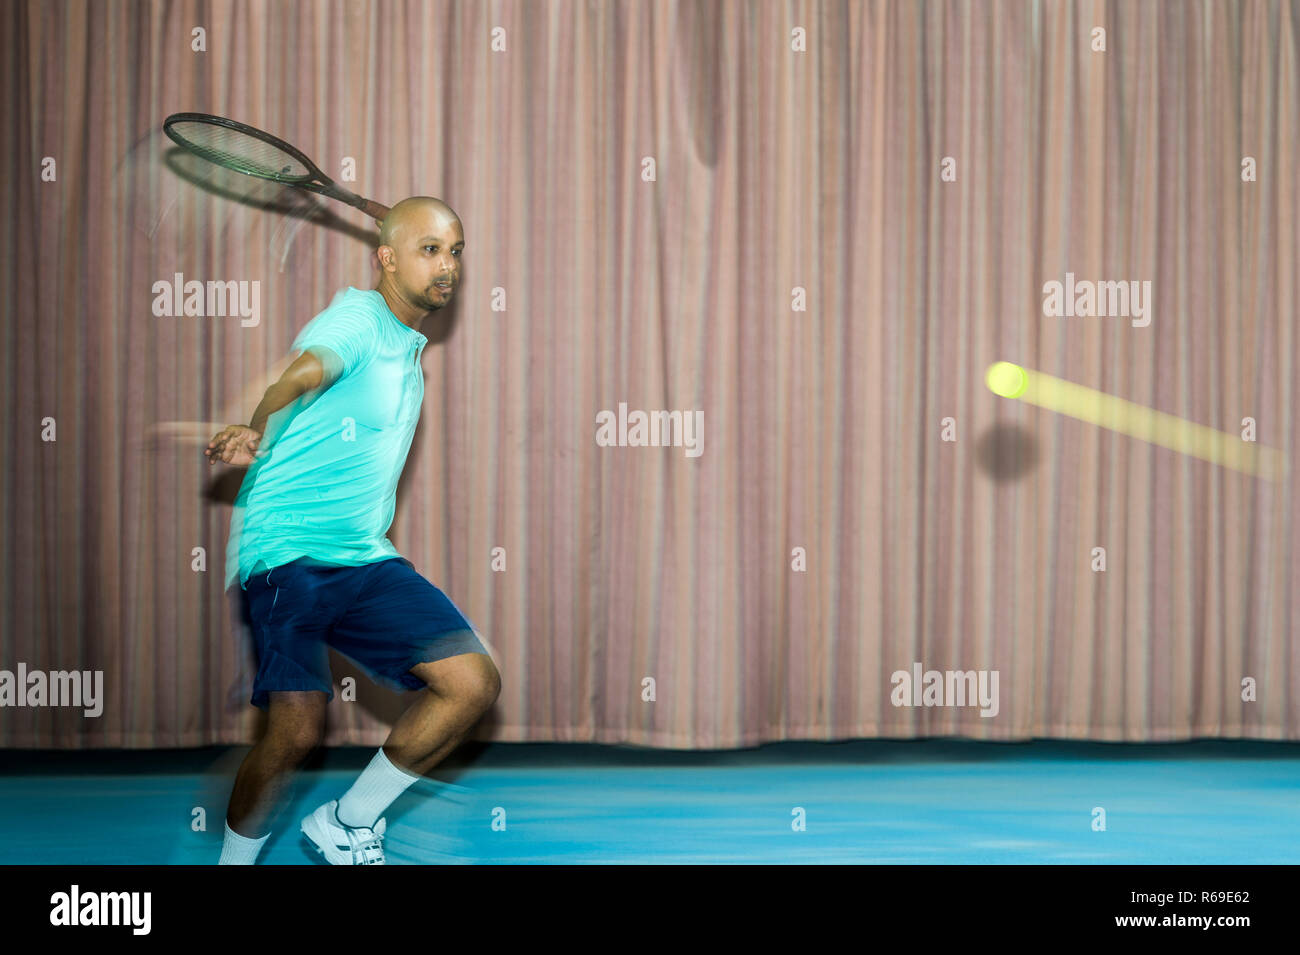 Tennisspieler Beim Vorhandspiel. Stock Photo